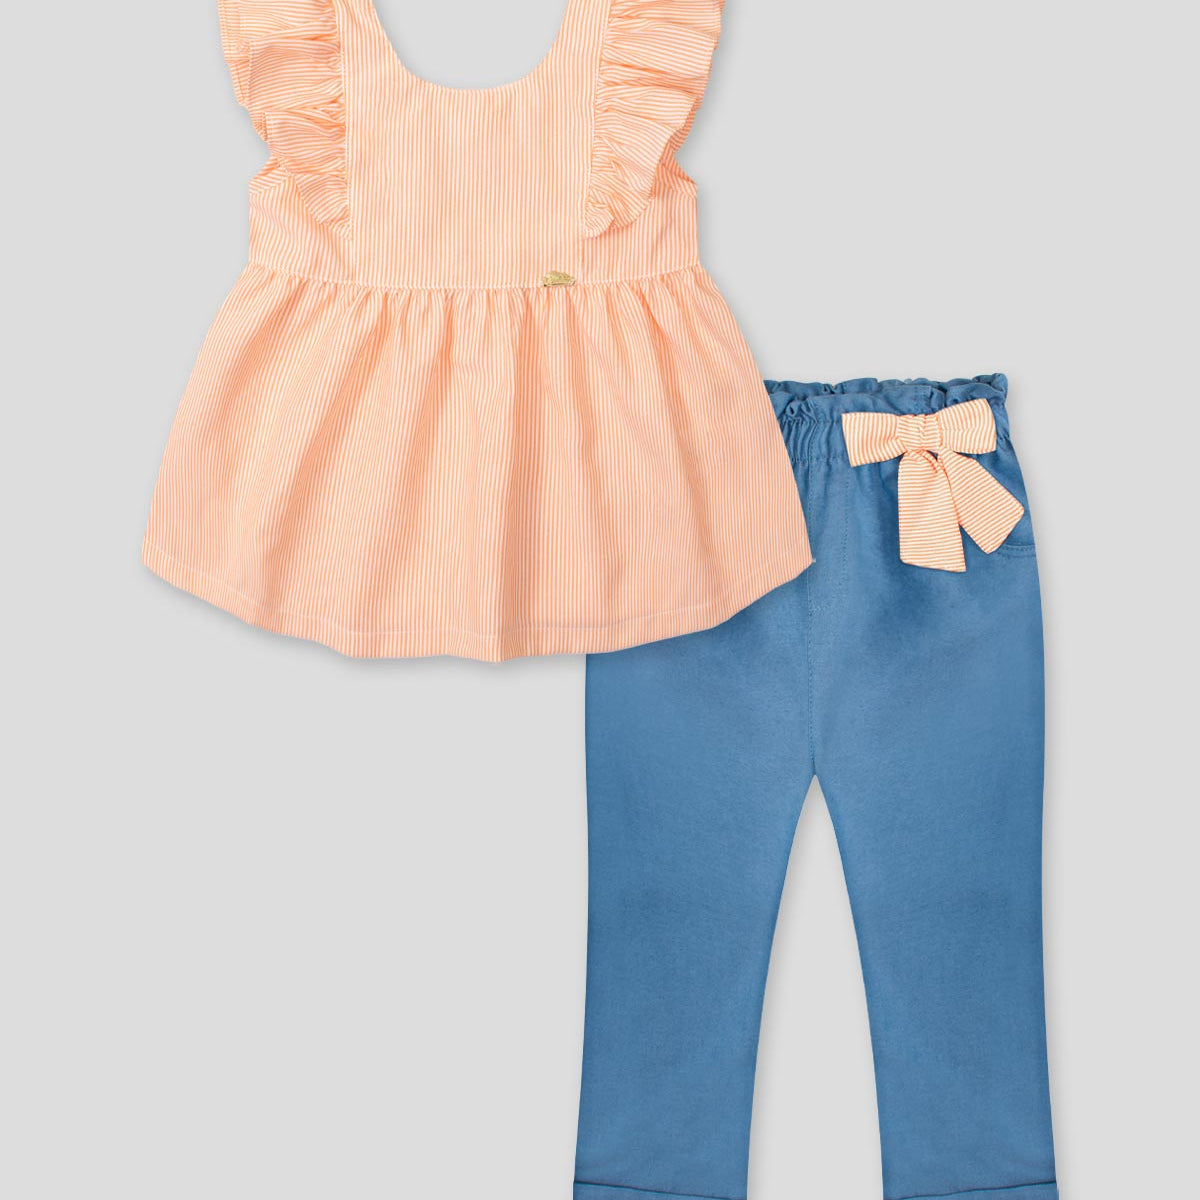 Conjunto blusa de líneas naranjas con bolero en manga y leggins chambray con detalle de moño para bebé niña